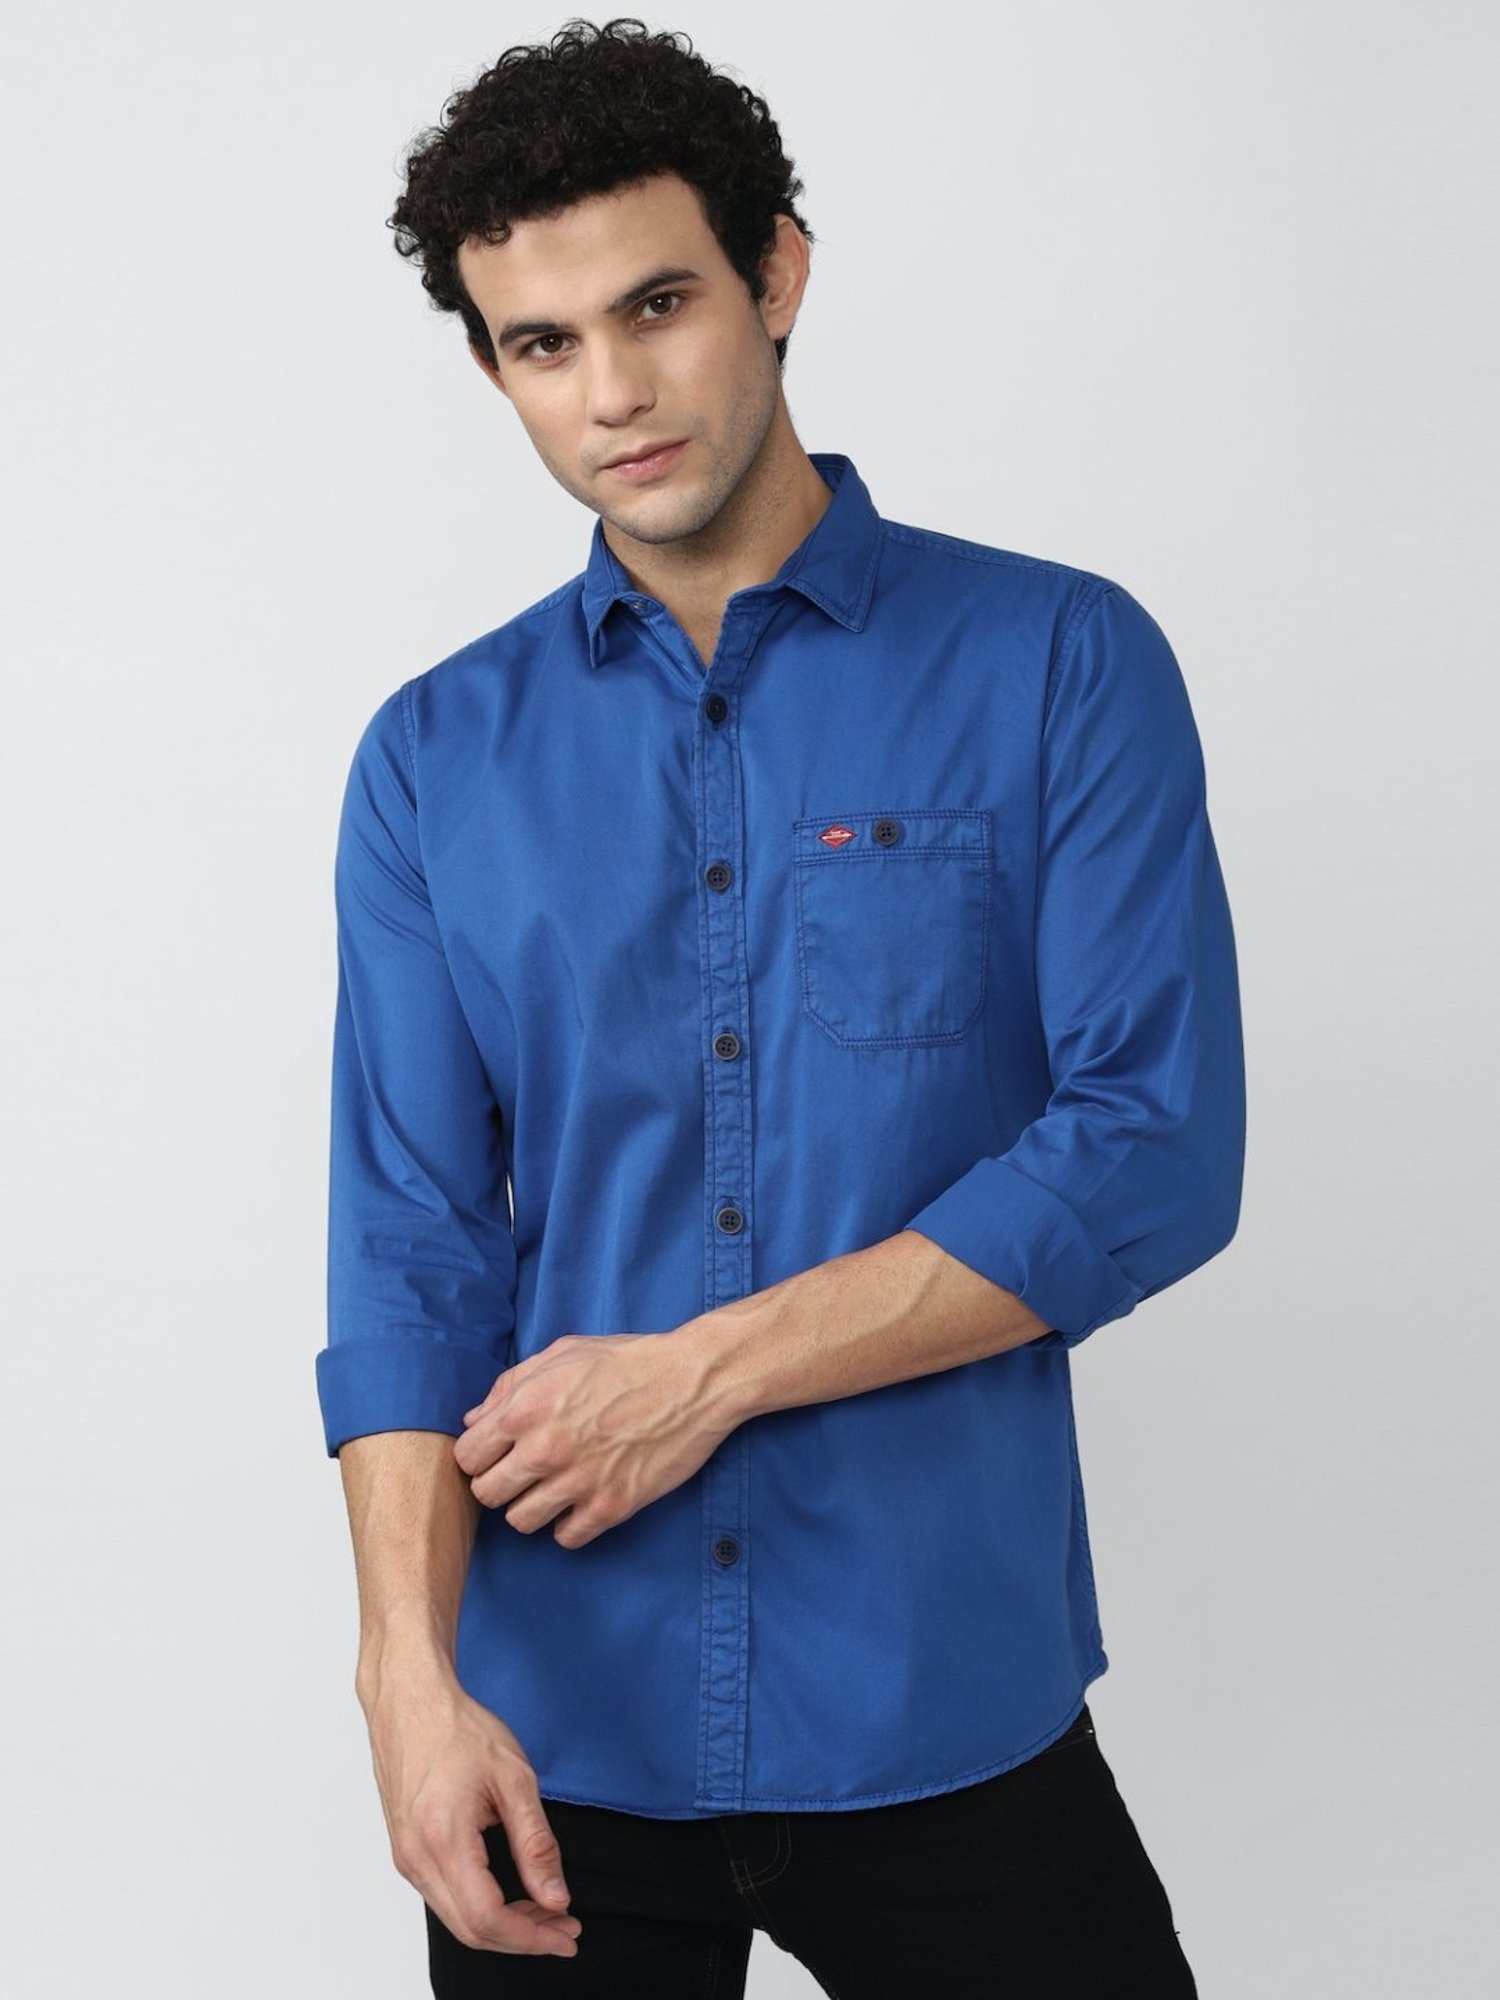 Trendy denim shirts for women & girls light blue colour